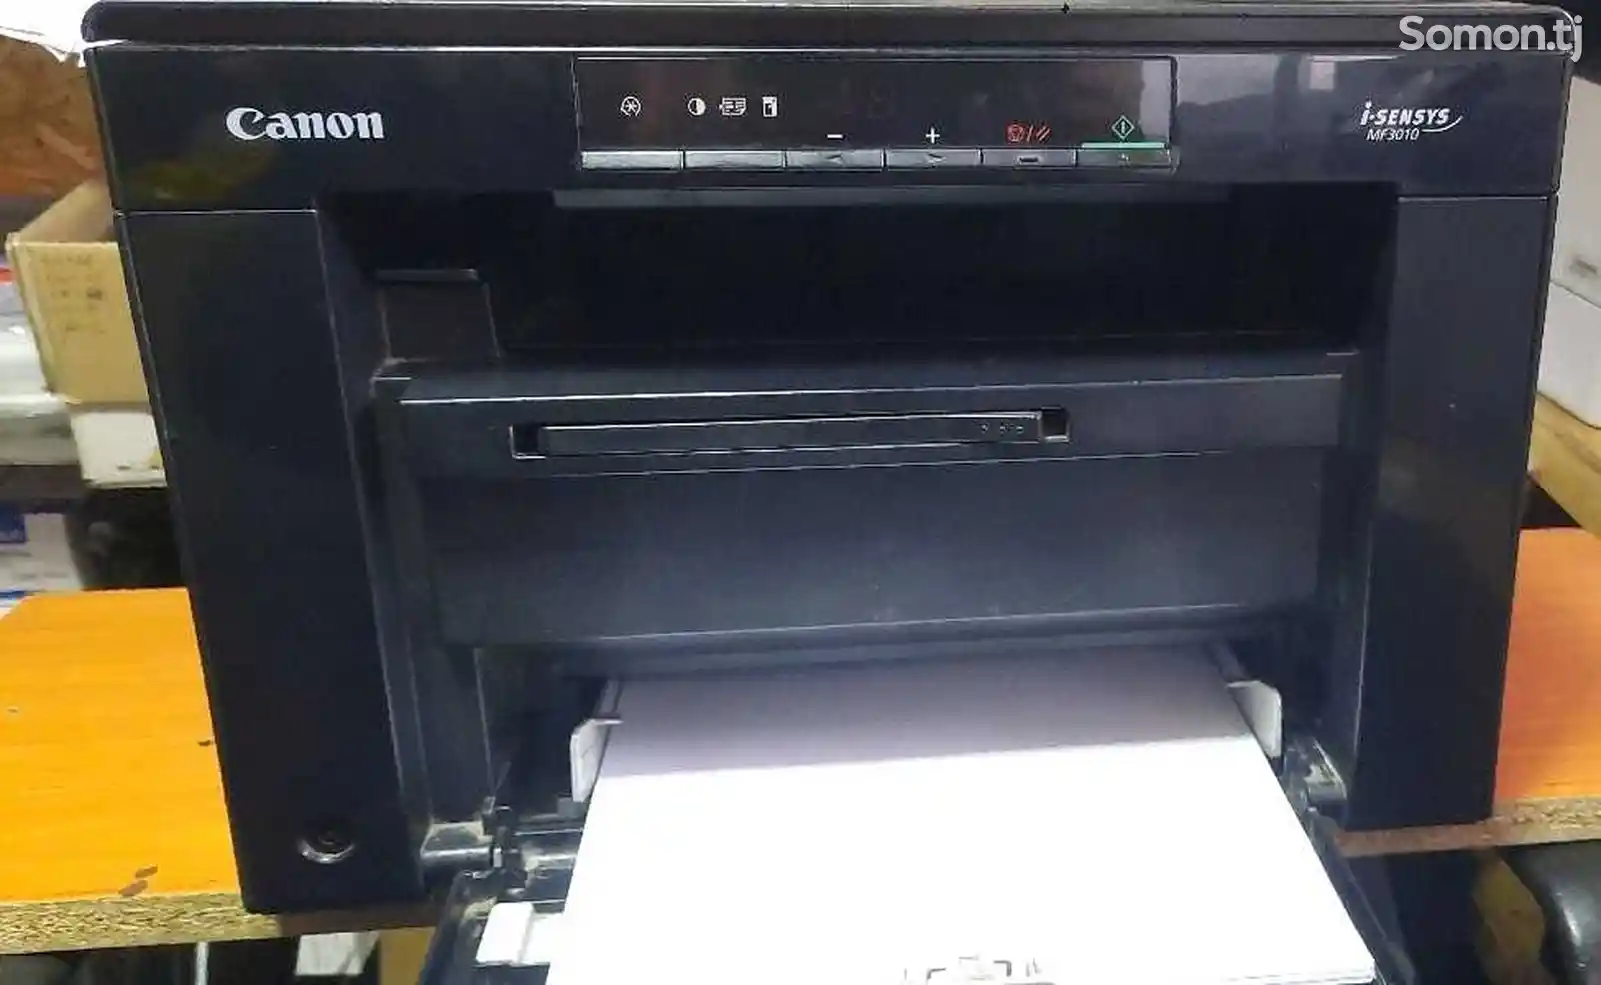 Принтер Canon mf 3010 3/1 i Sensys-2